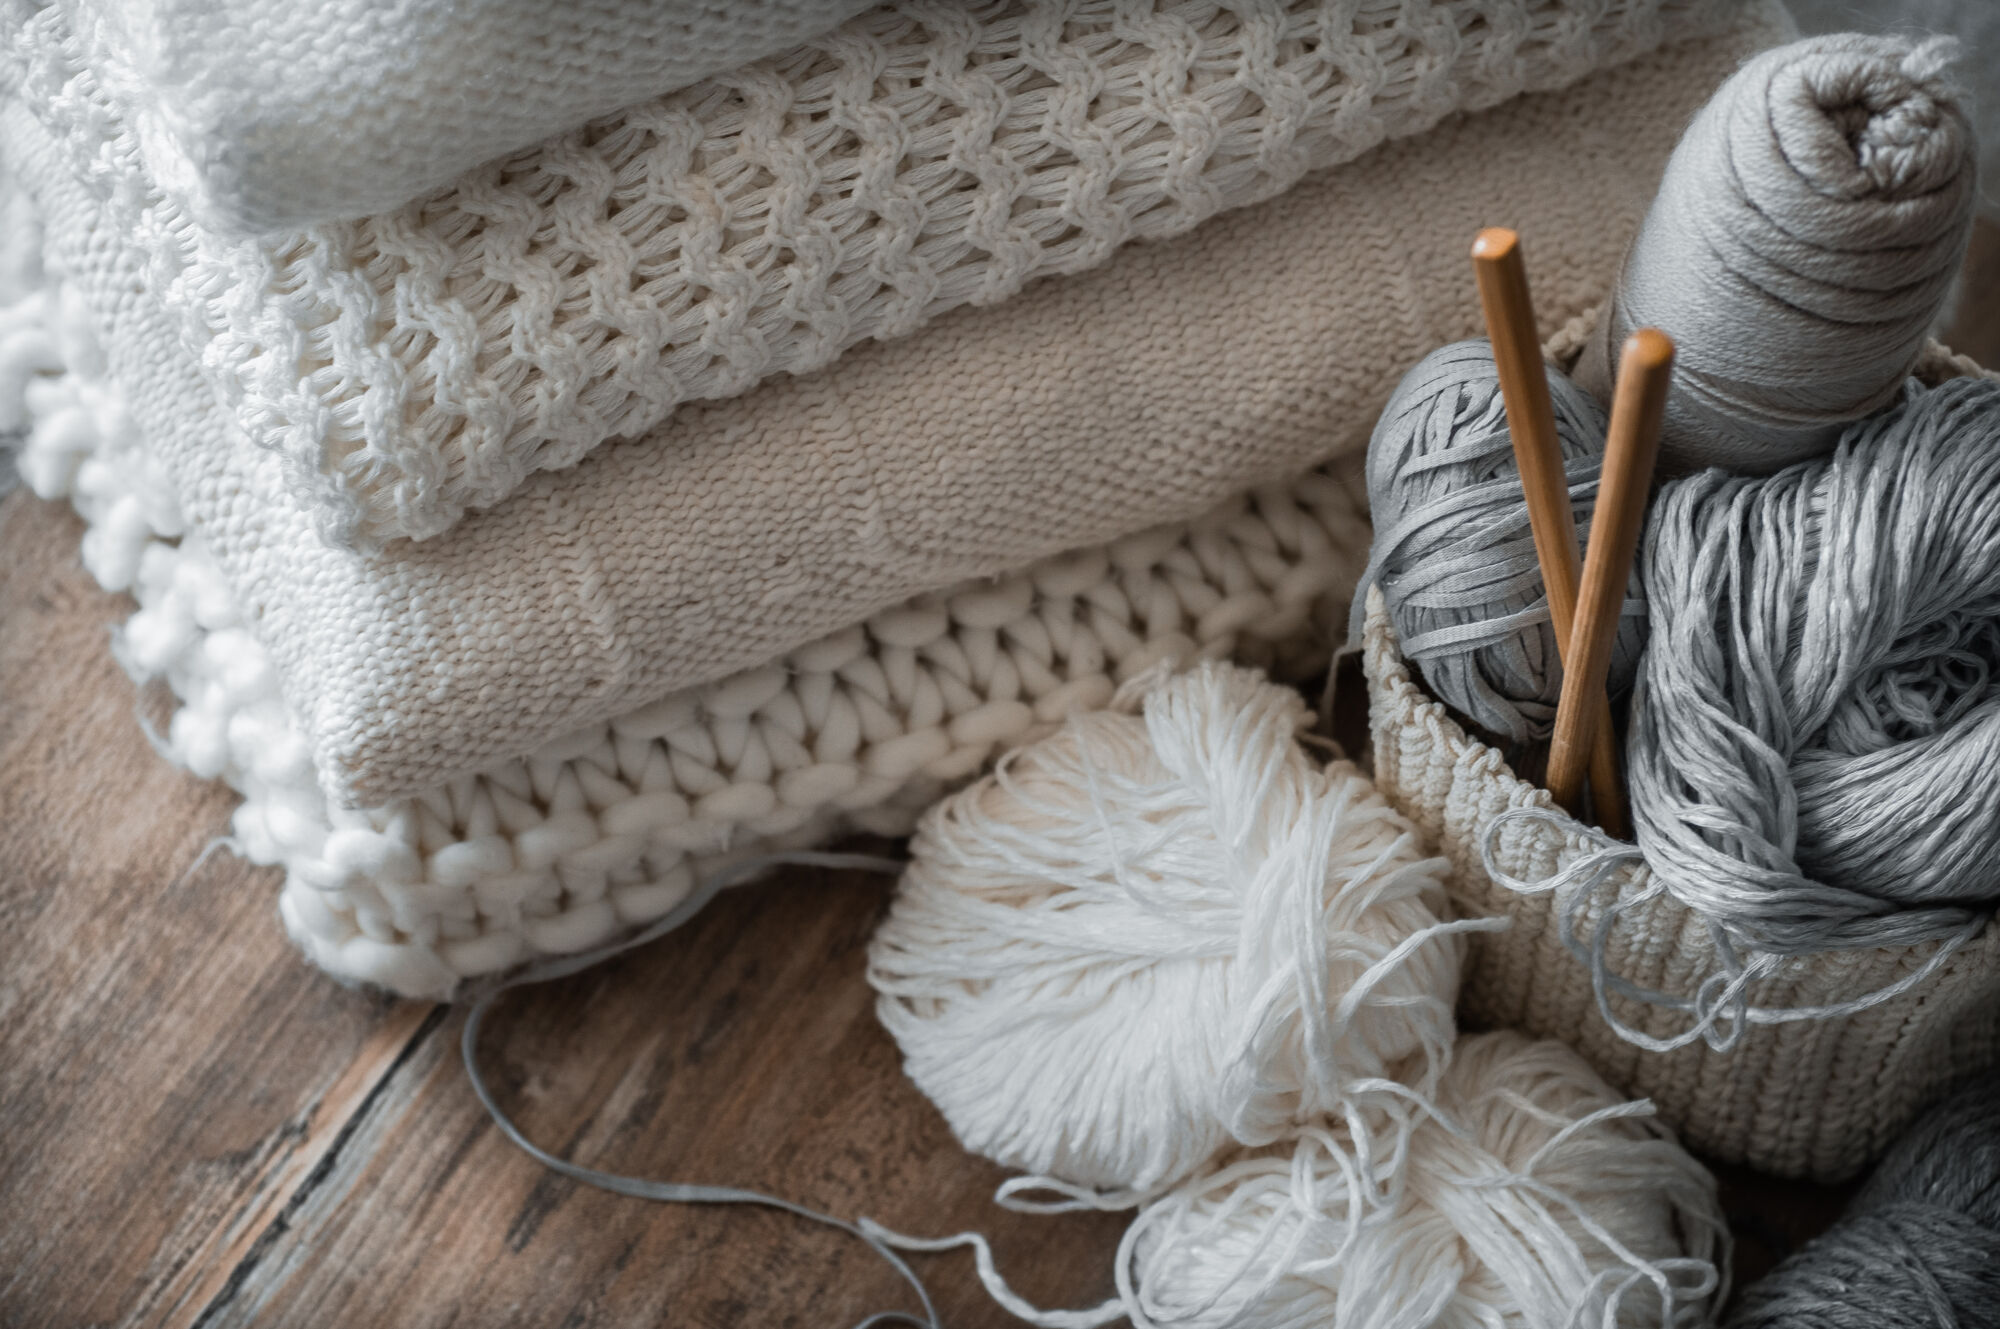 Comment choisir ses aiguilles à tricoter ?